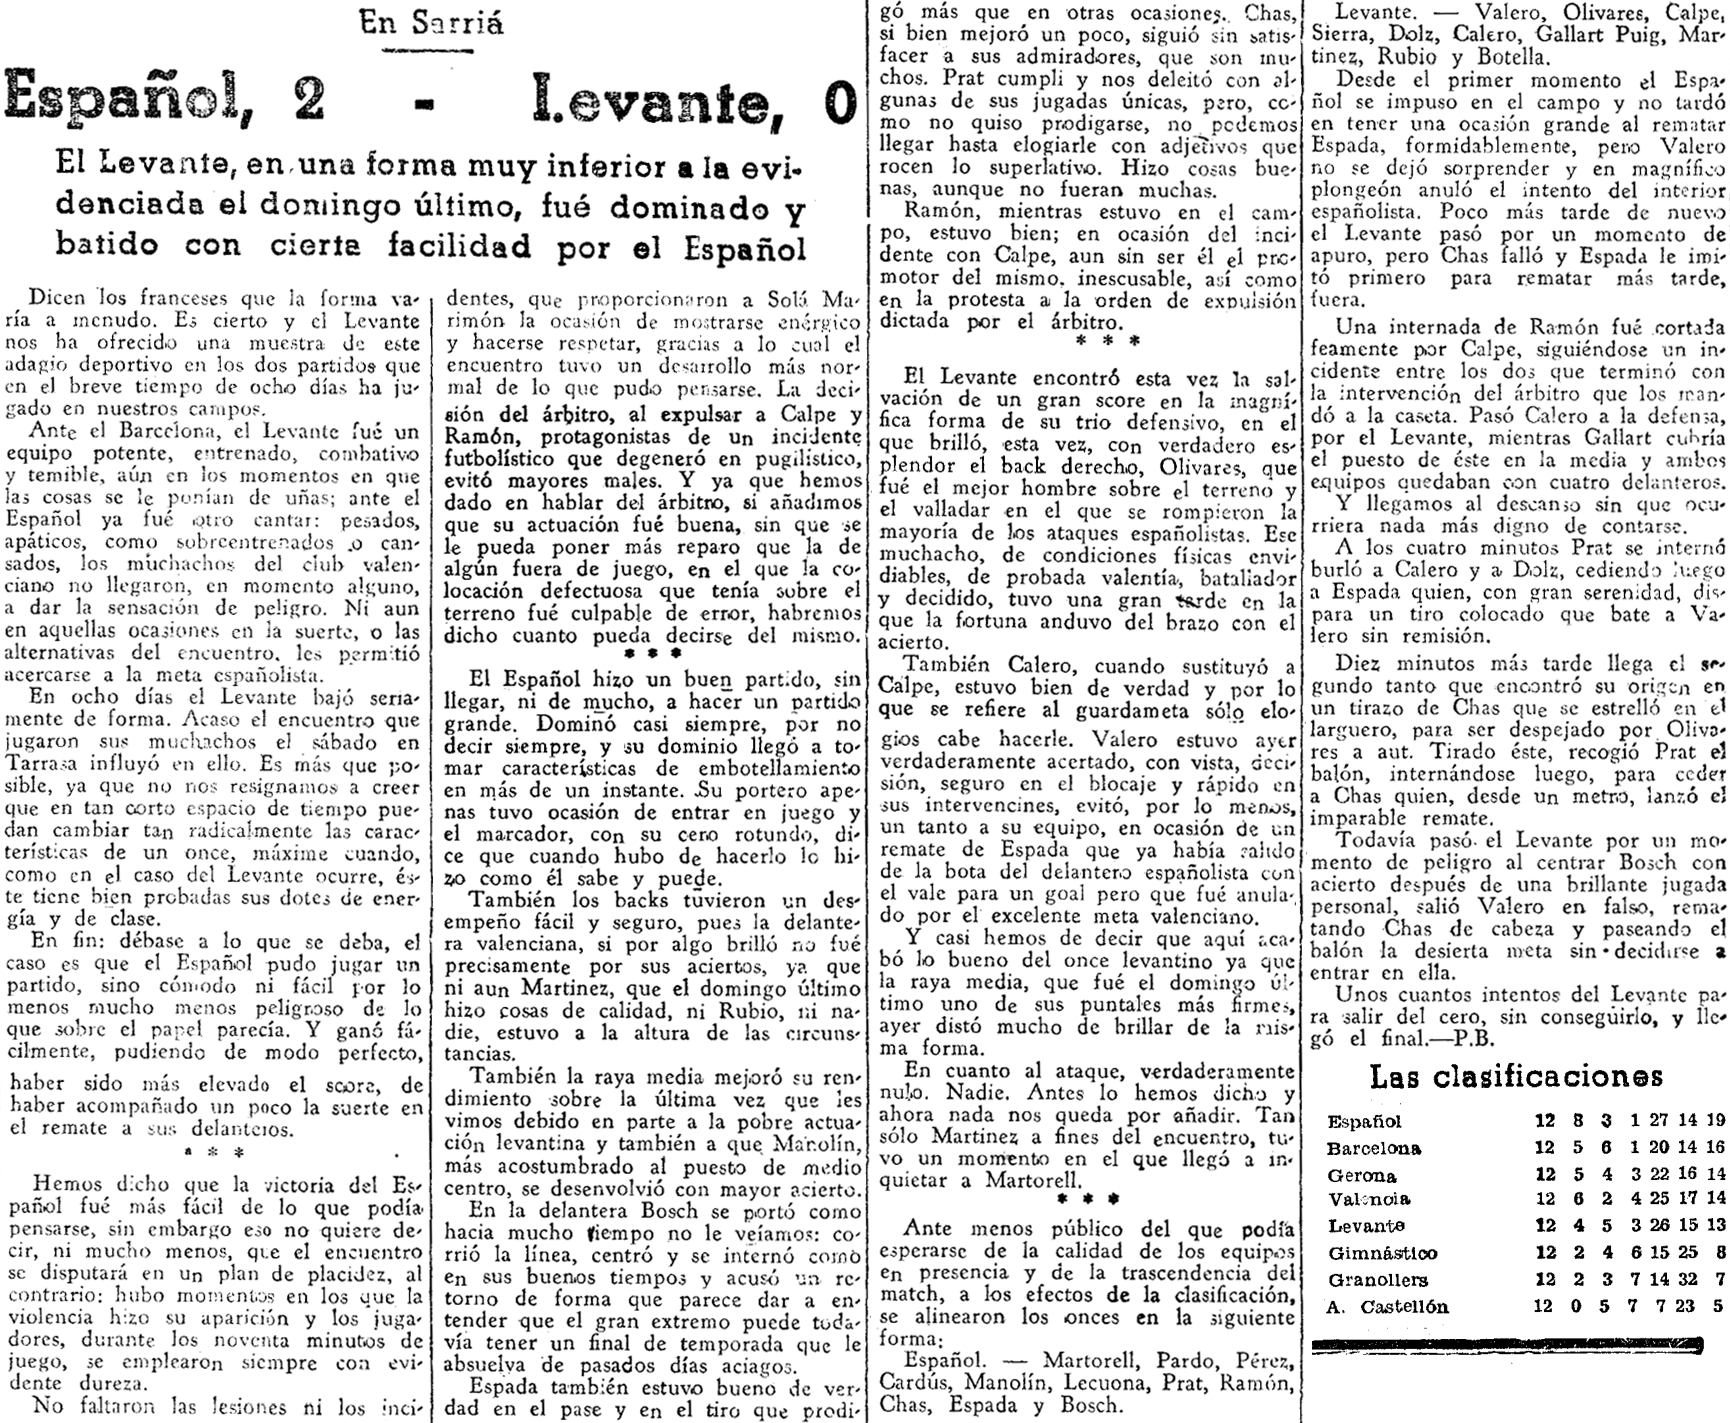 1937.04.18 (18 апреля 1937), Эспаньол - Леванте, 2-0 (2).png